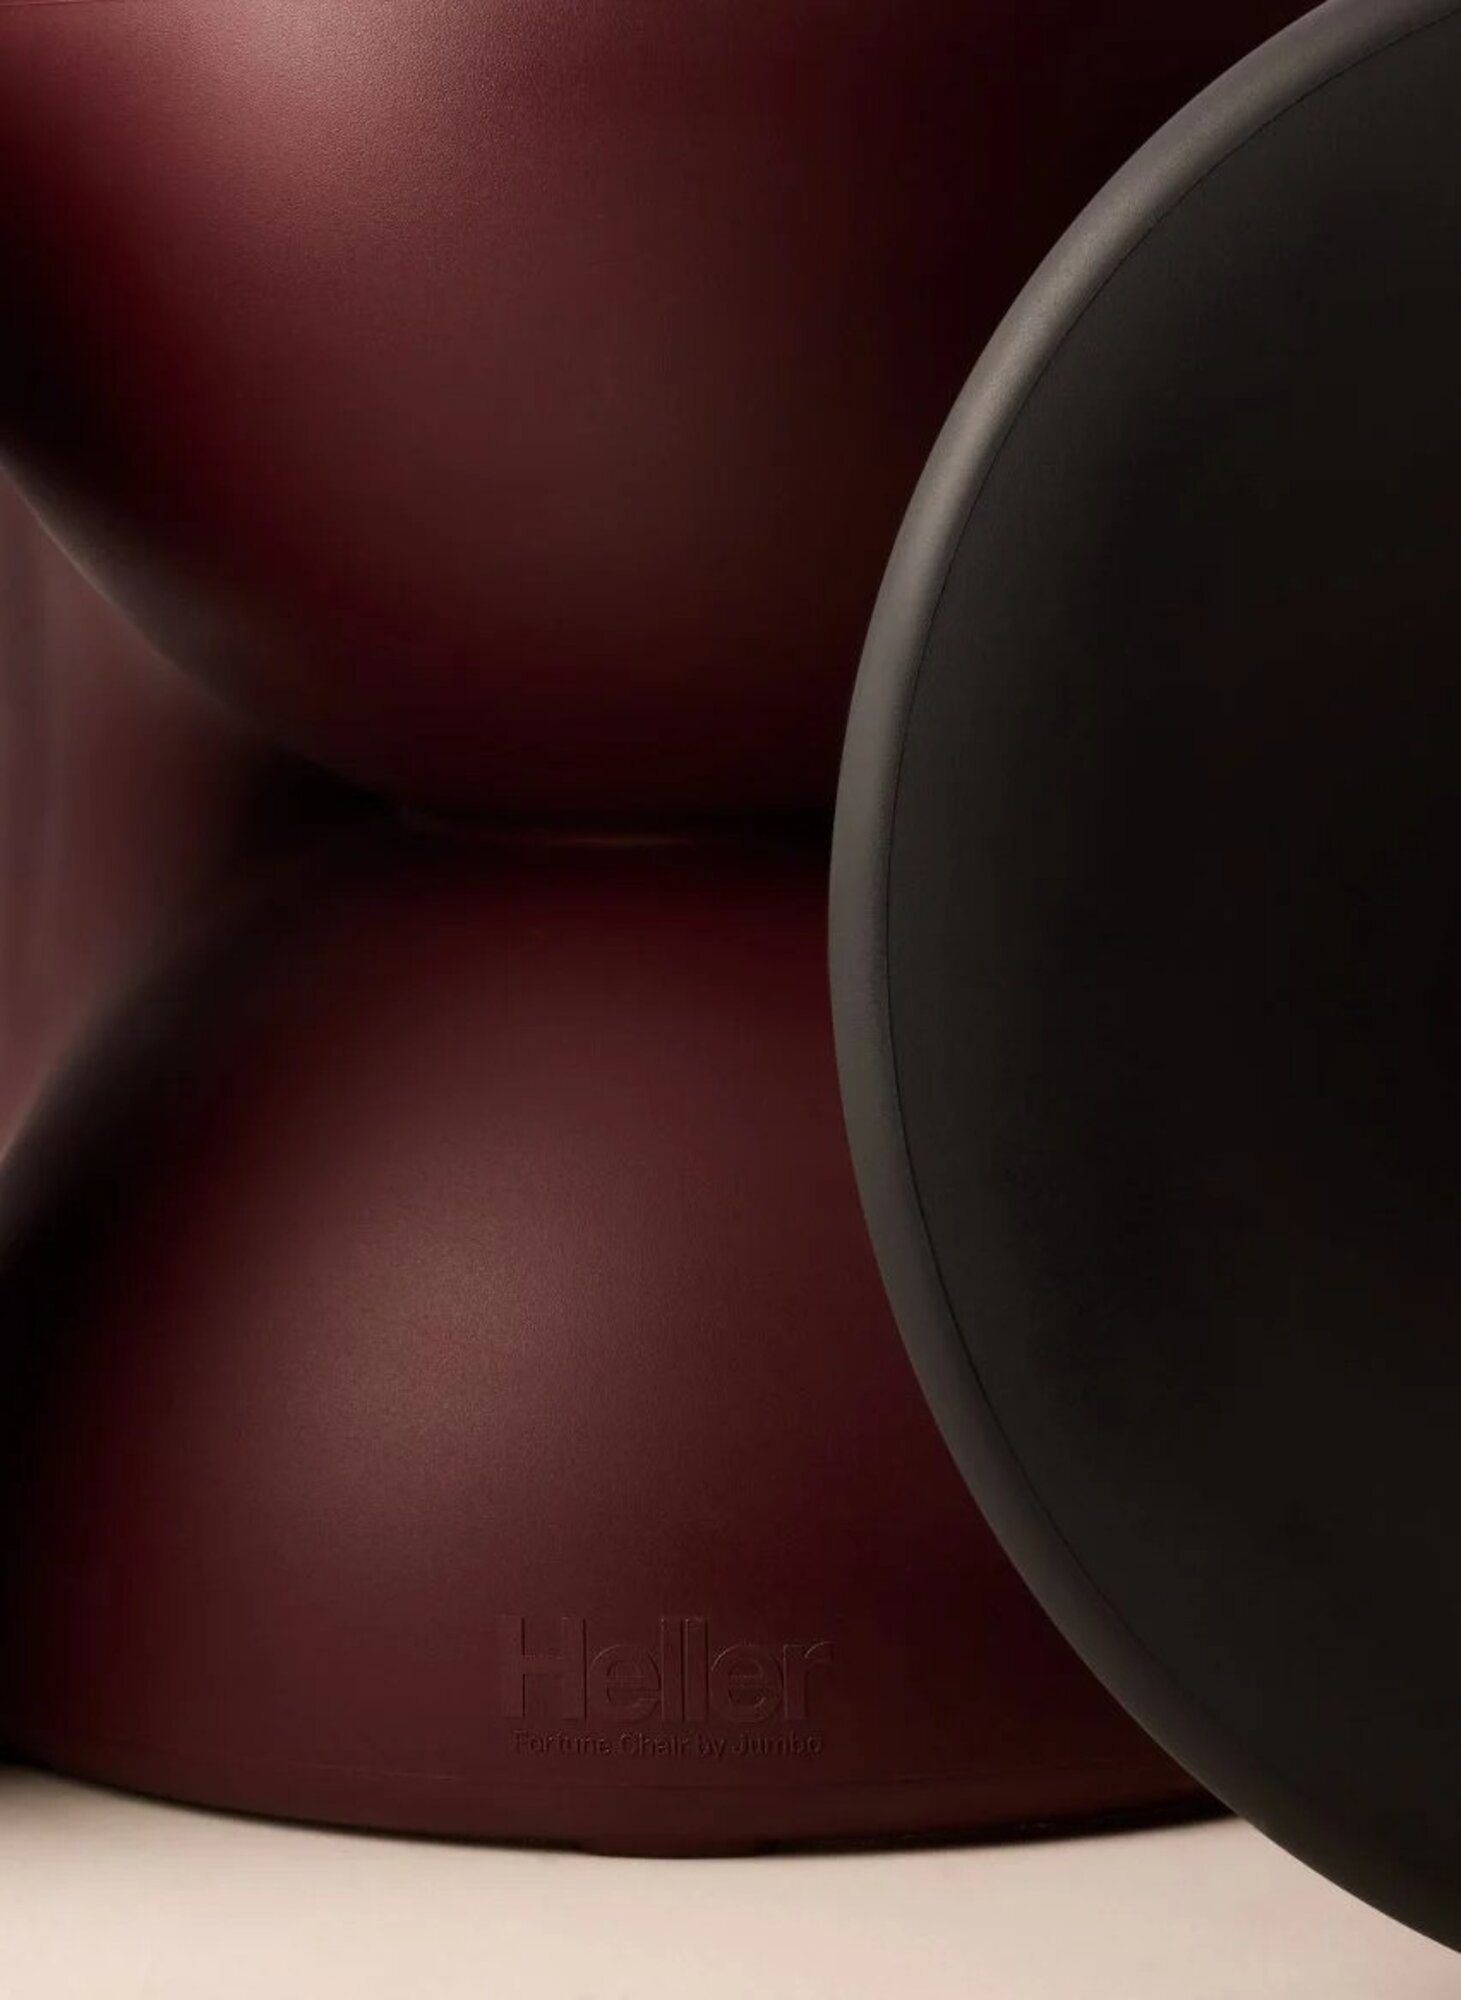 A Heller szerencsesüti alakú széke